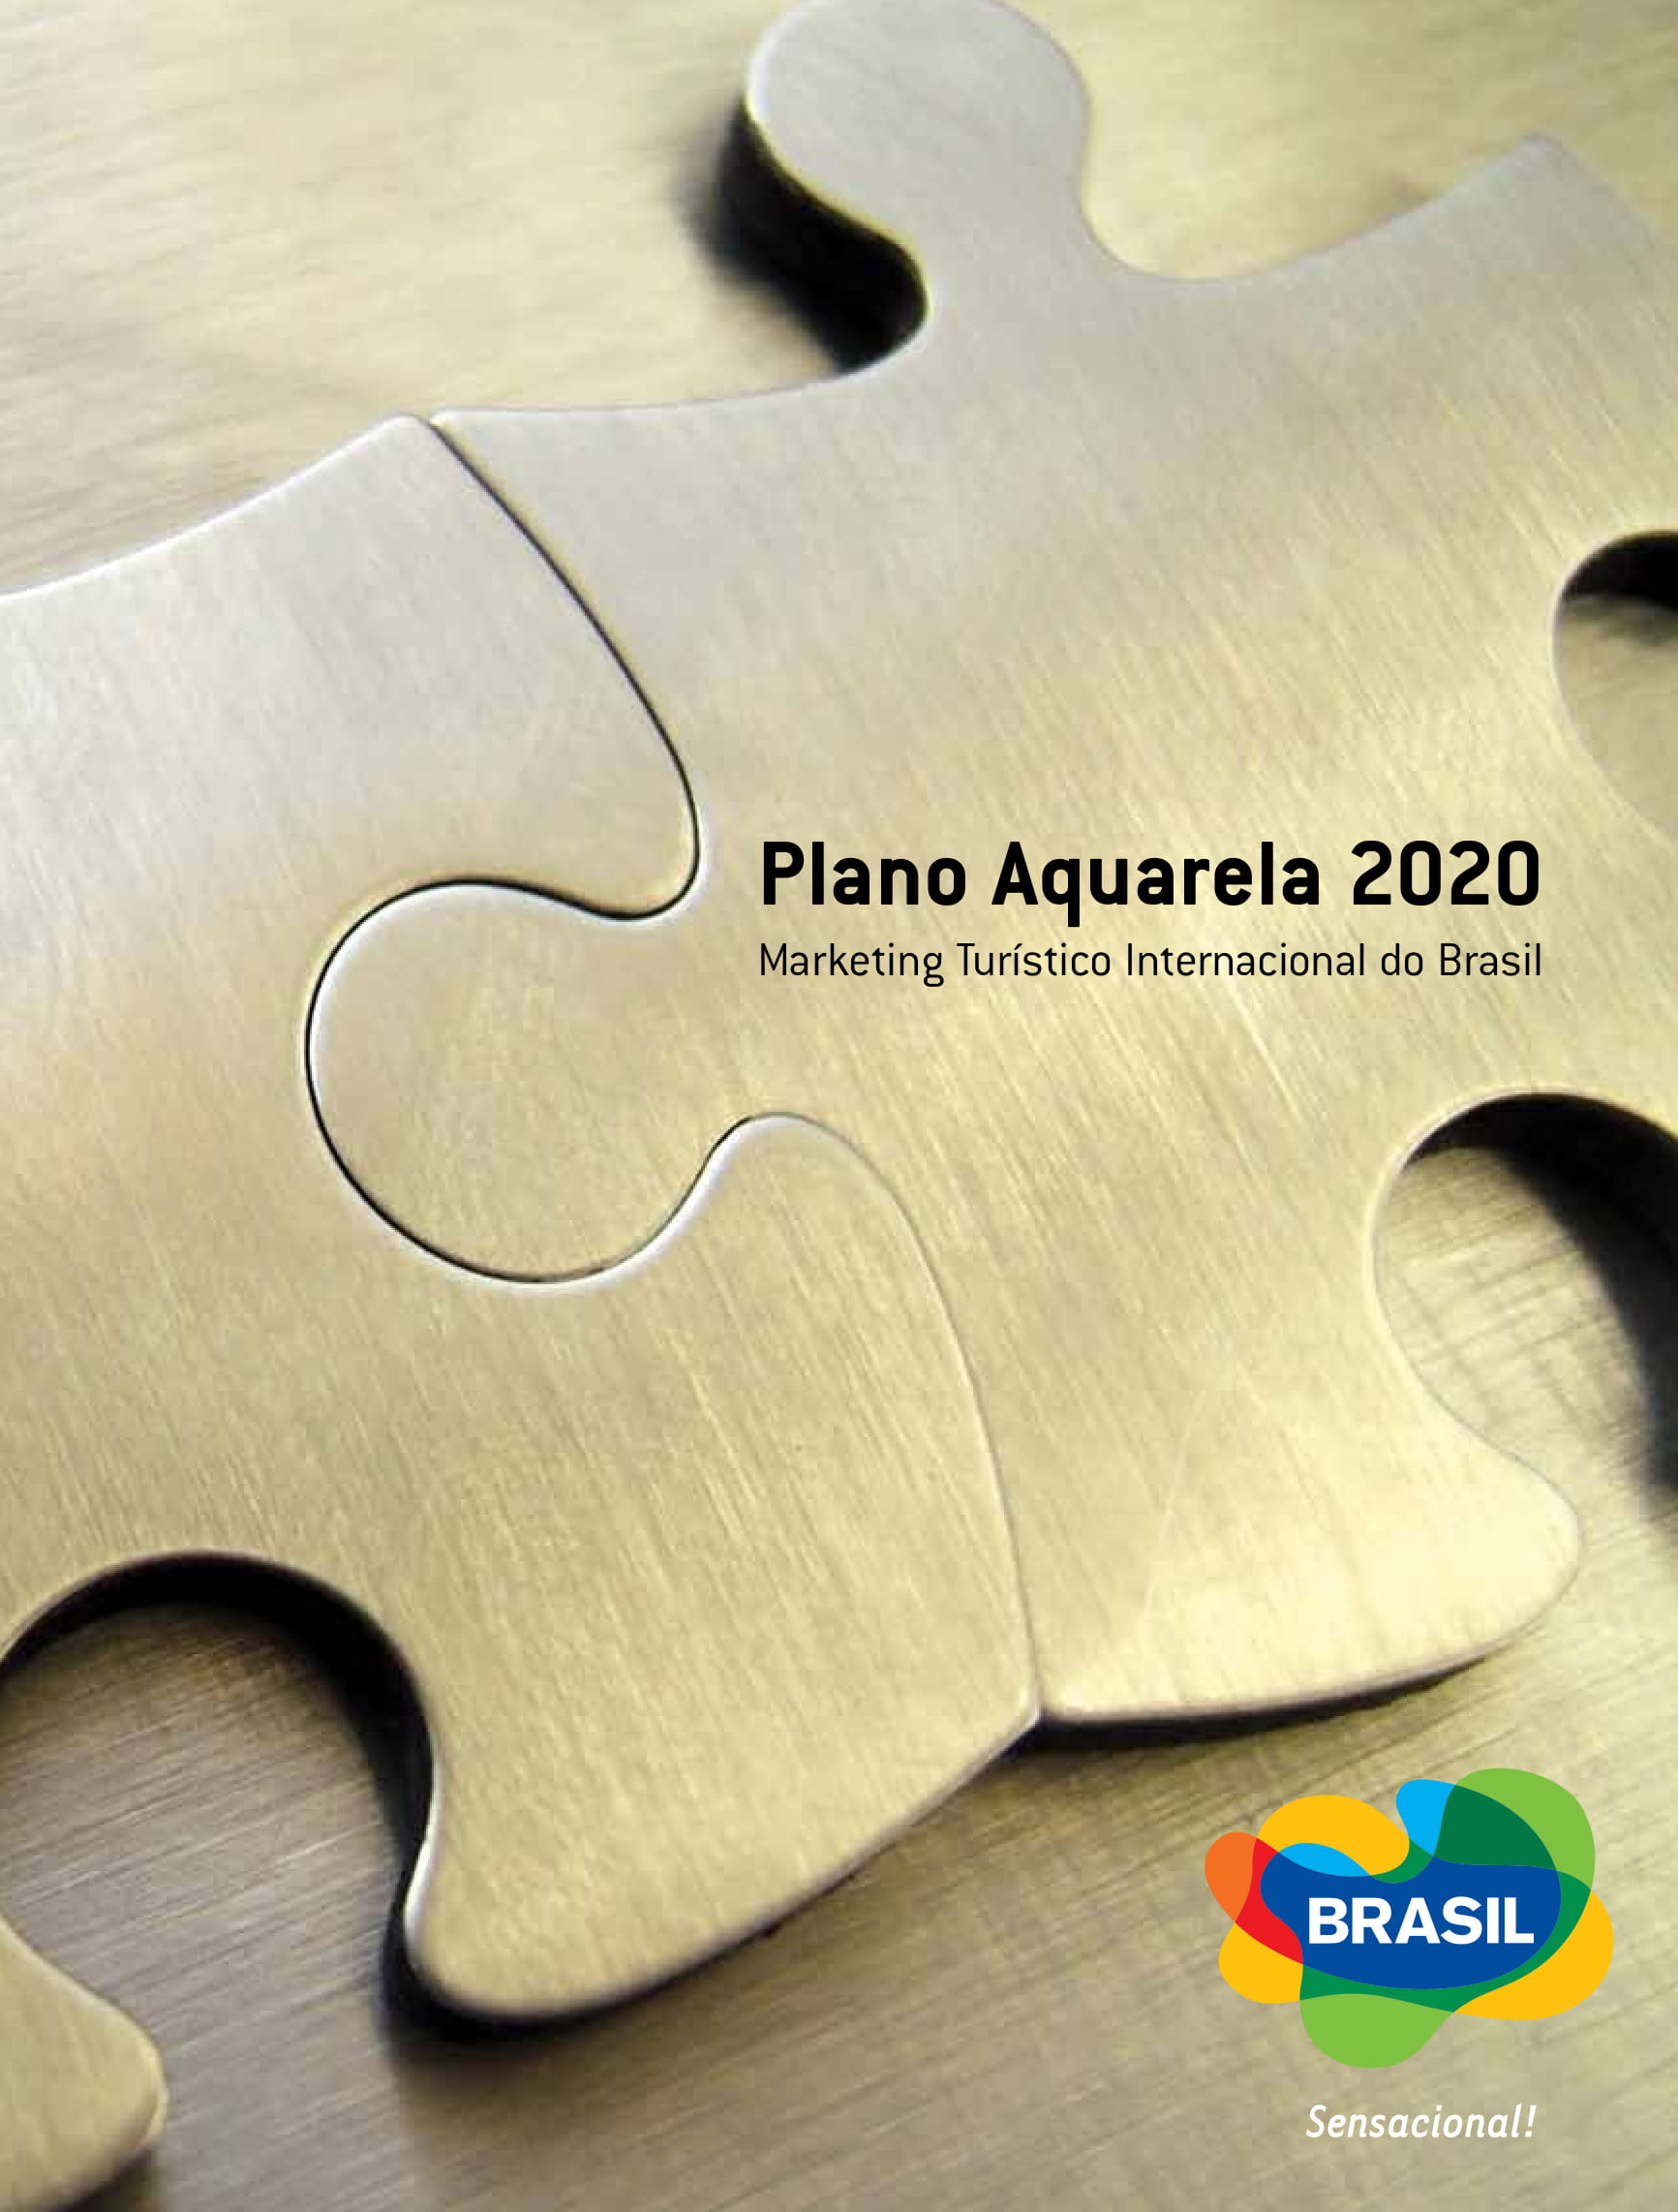 Plano_Aquarela_2020-01.jpg